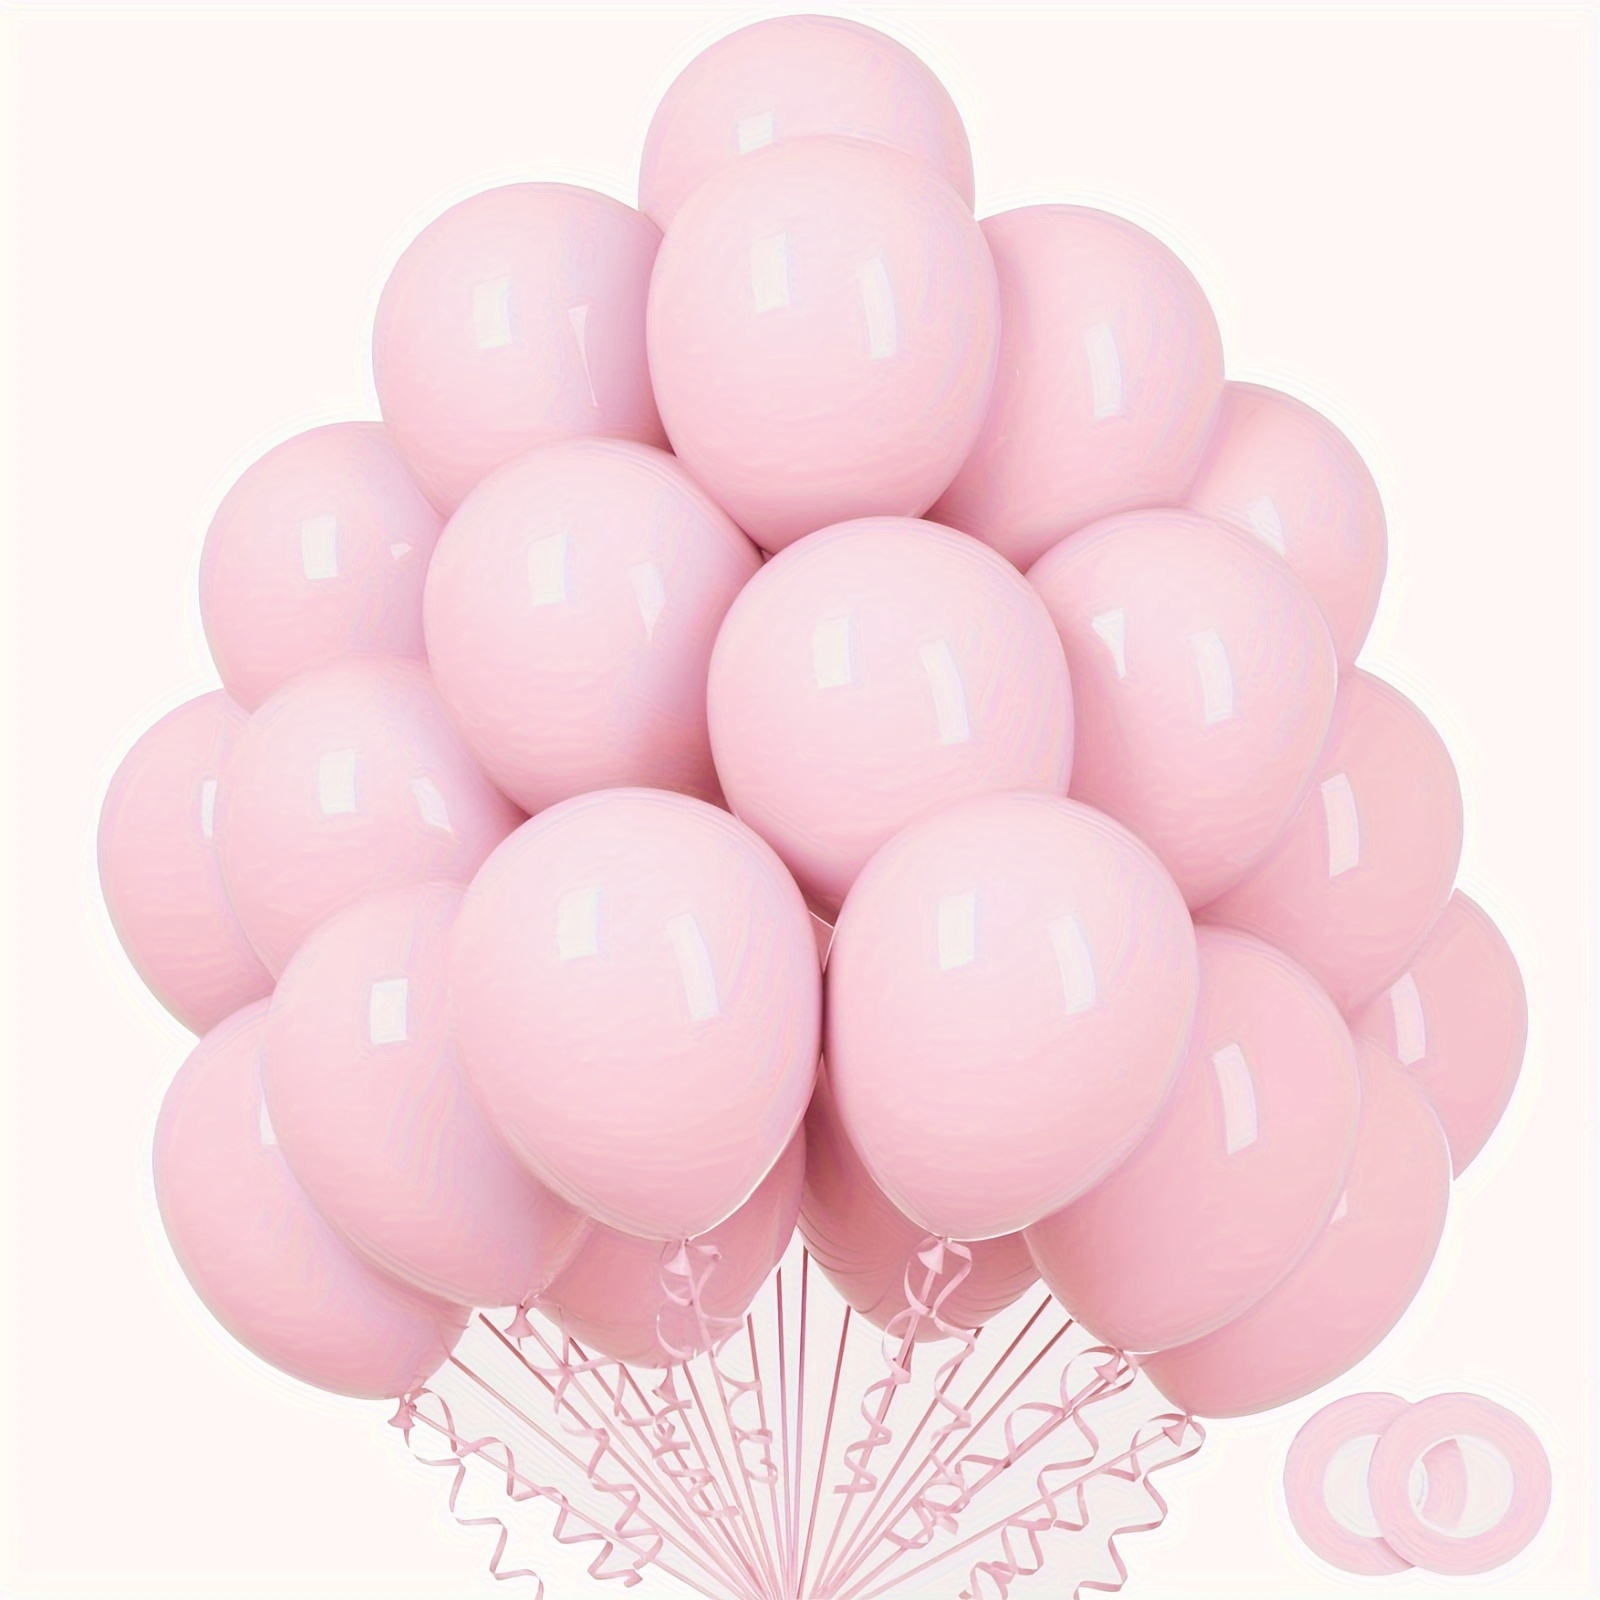 Globos de color rosa claro, 100 unidades, 18, 12, 5 pulgadas, globos rosas  de diferentes tamaños, globos de látex grandes de color rosa pastel, kit de